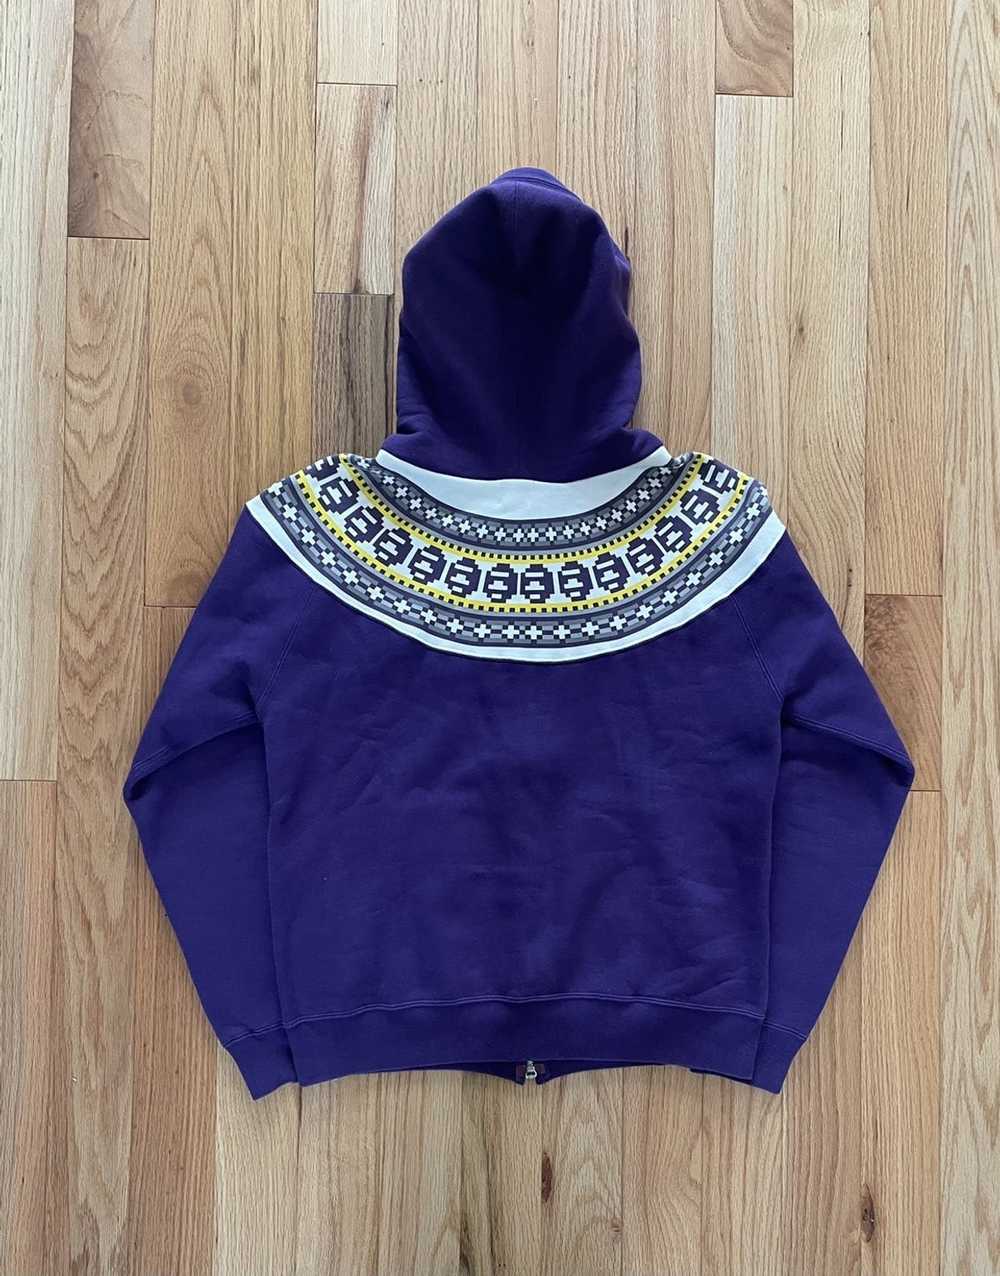 Bape vintage purple bape hoodie - image 4